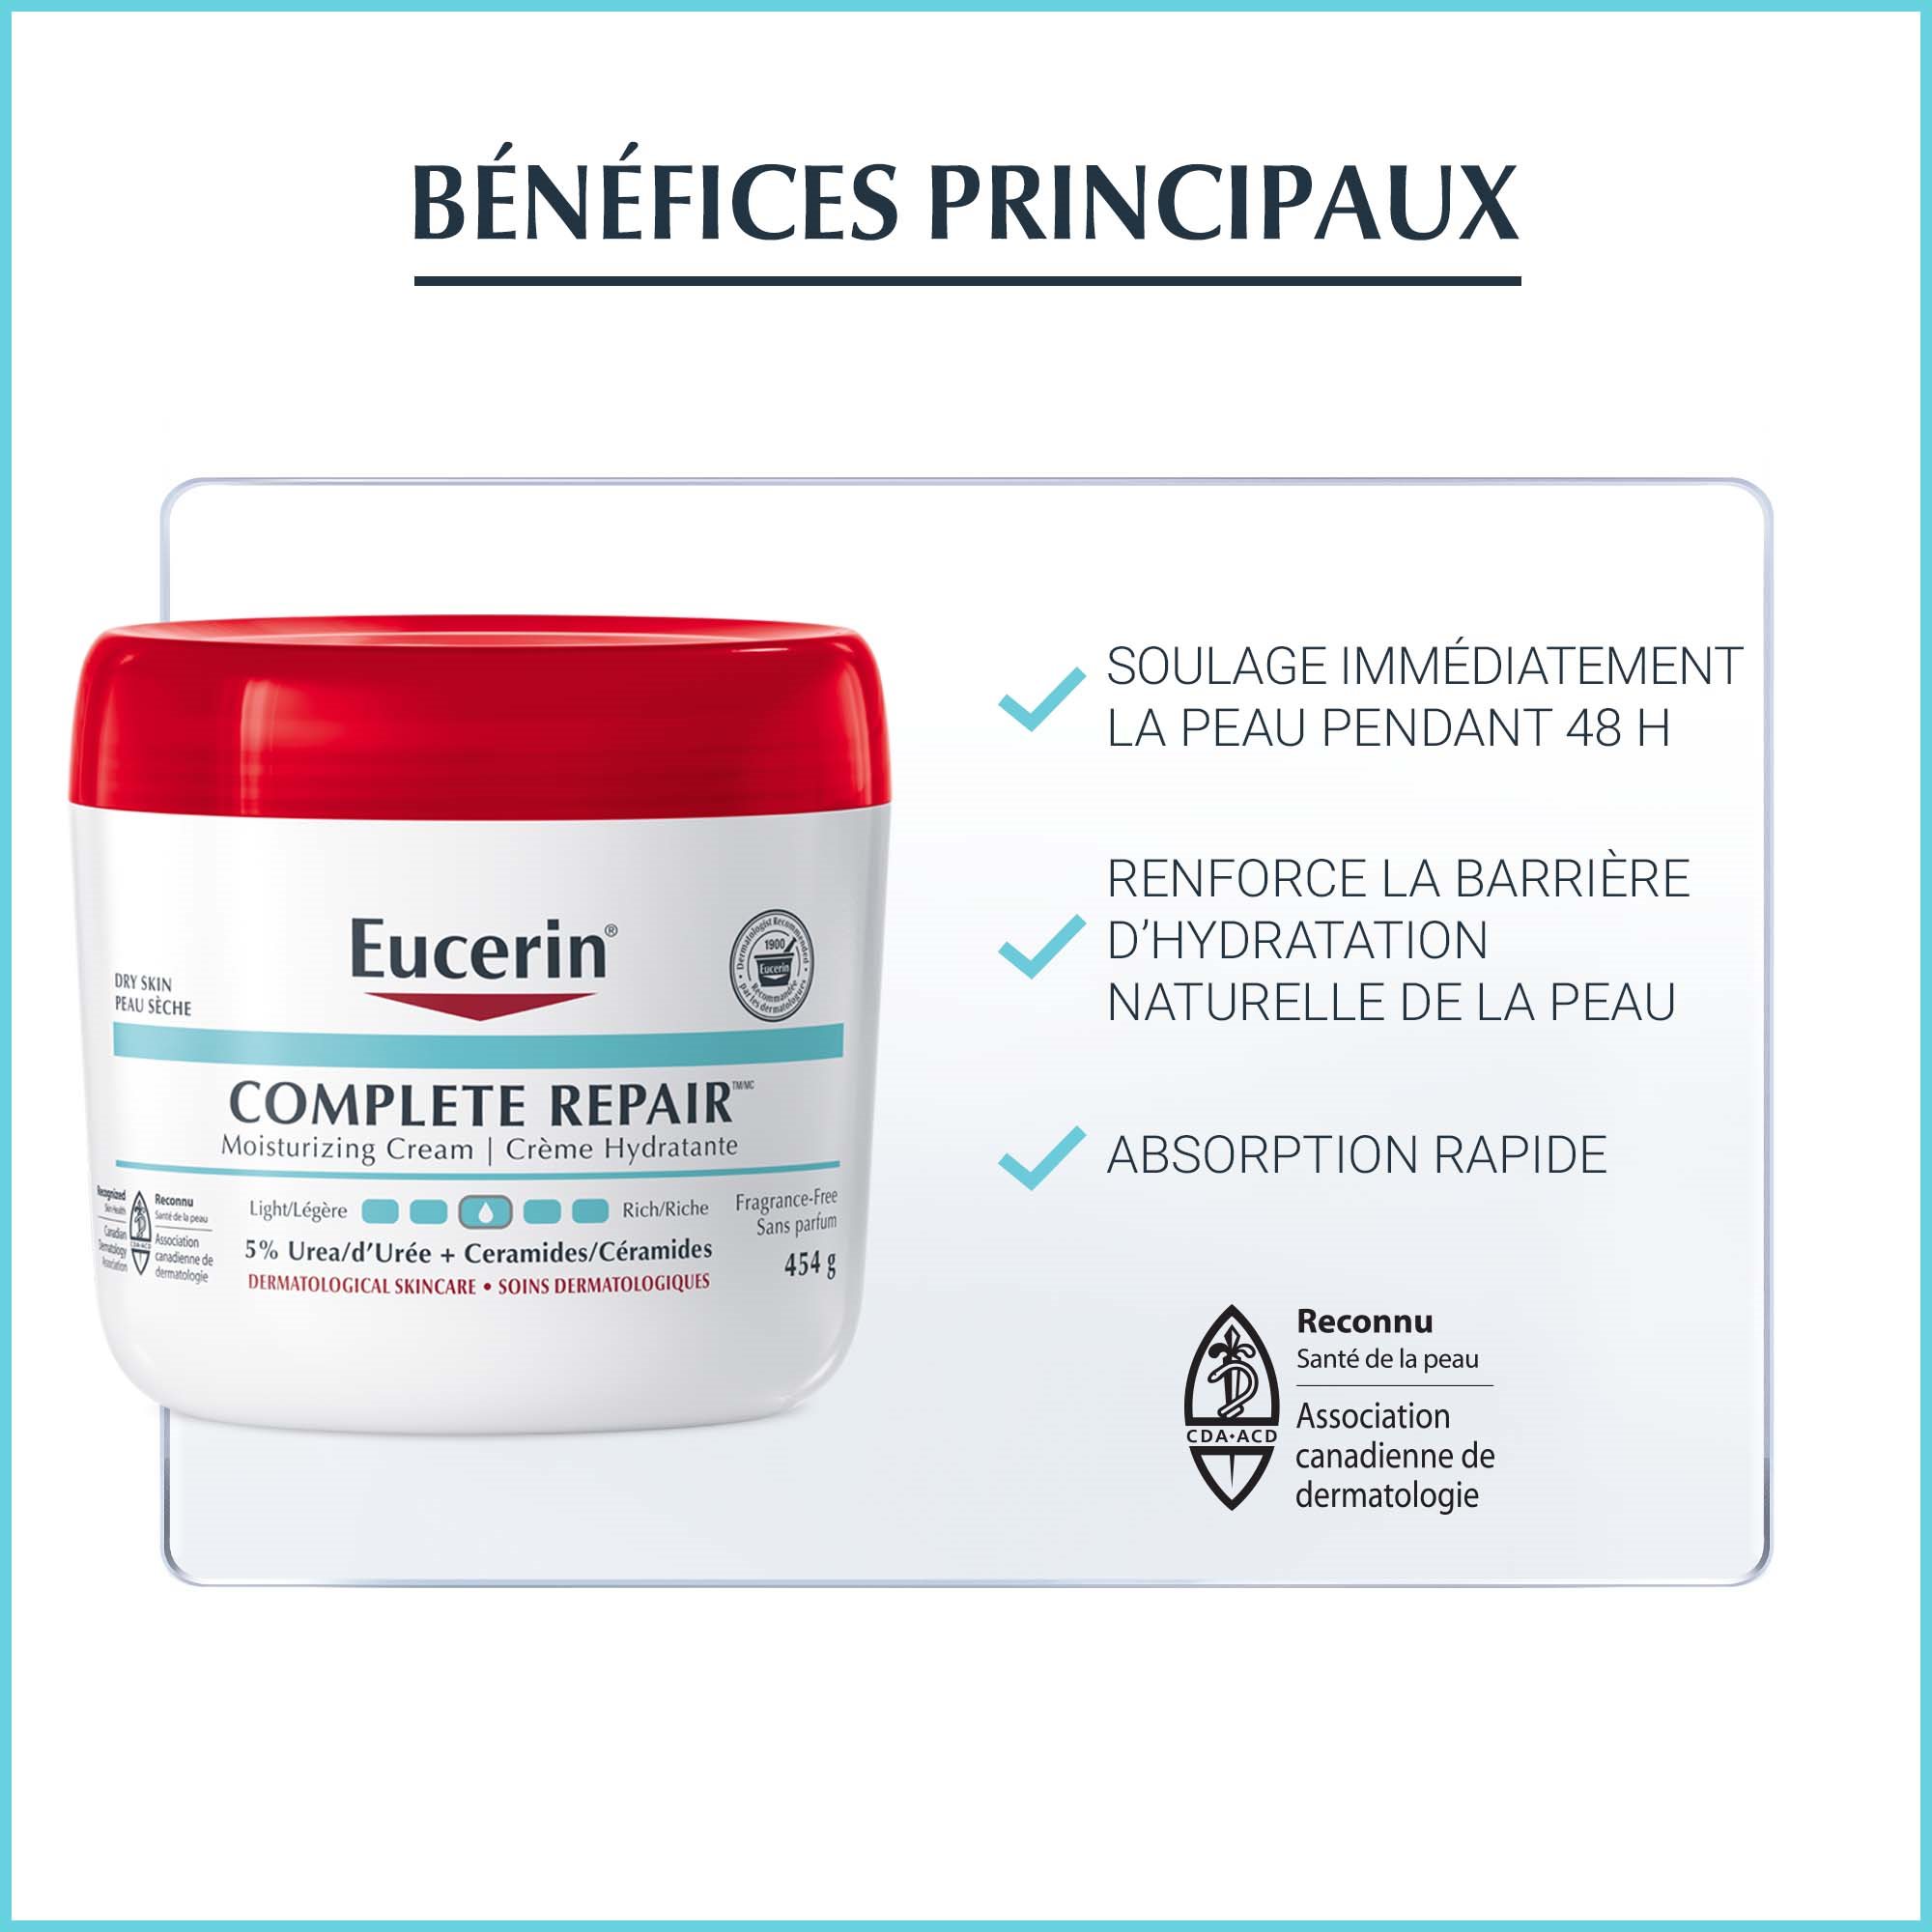 Image montrant les principaux bienfaits associés à l’utilisation de la Crème Eucerin Complete Repair.